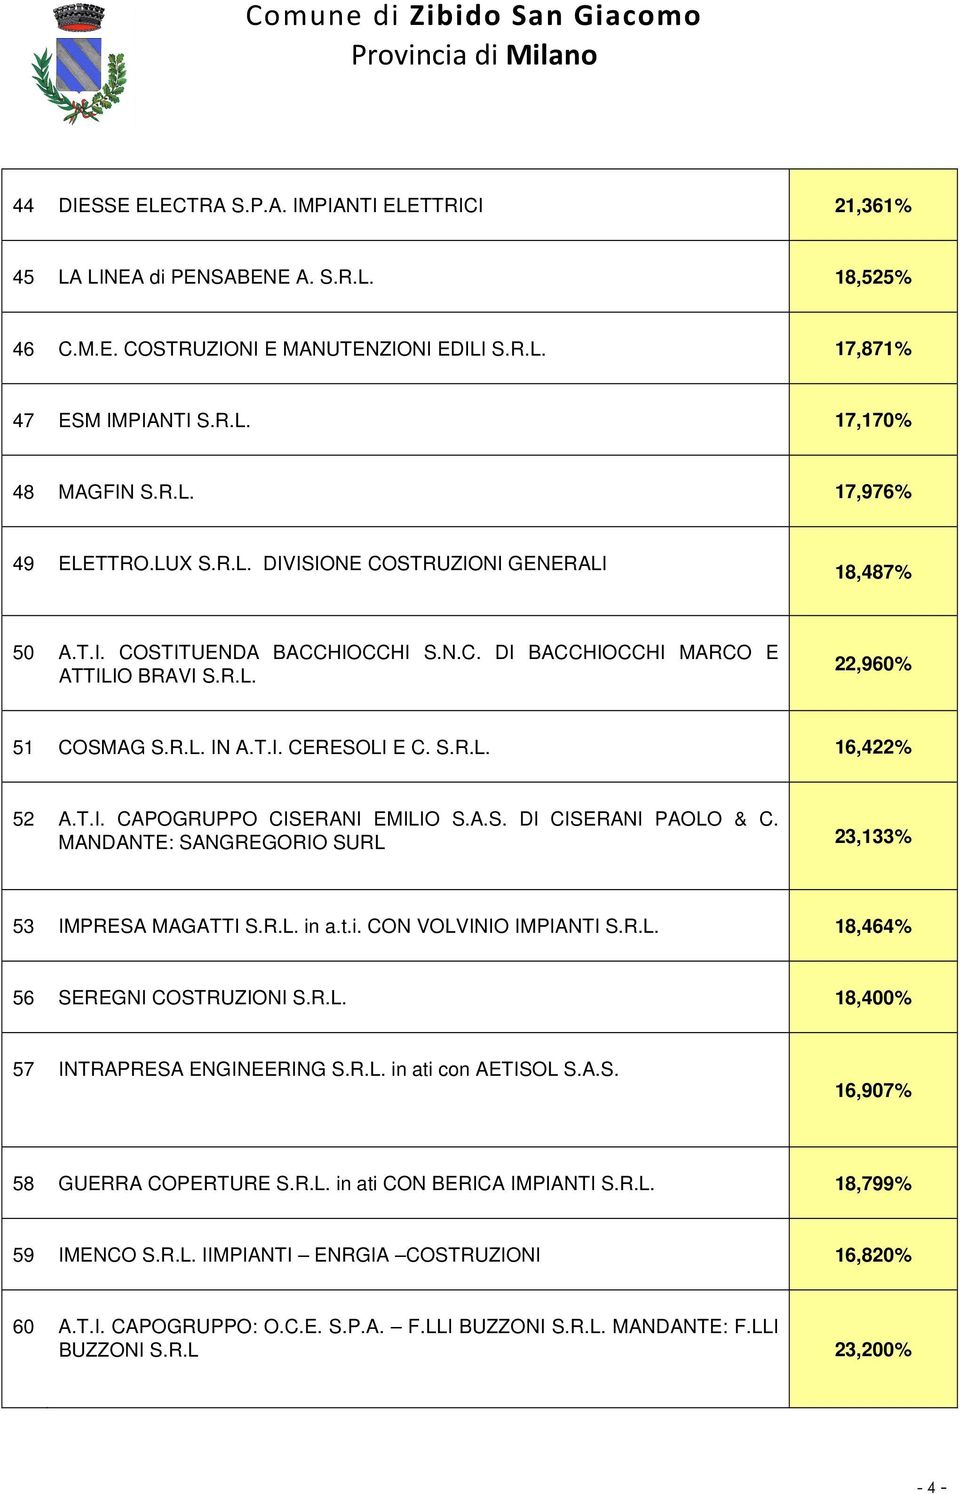 T.I. CAPOGRUPPO CISERANI EMILIO S.A.S. DI CISERANI PAOLO & C. MANDANTE: SANGREGORIO SURL 23,133% 53 IMPRESA MAGATTI S.R.L. in a.t.i. CON VOLVINIO IMPIANTI S.R.L. 18,464% 56 SEREGNI COSTRUZIONI S.R.L. 18,400% 57 INTRAPRESA ENGINEERING S.